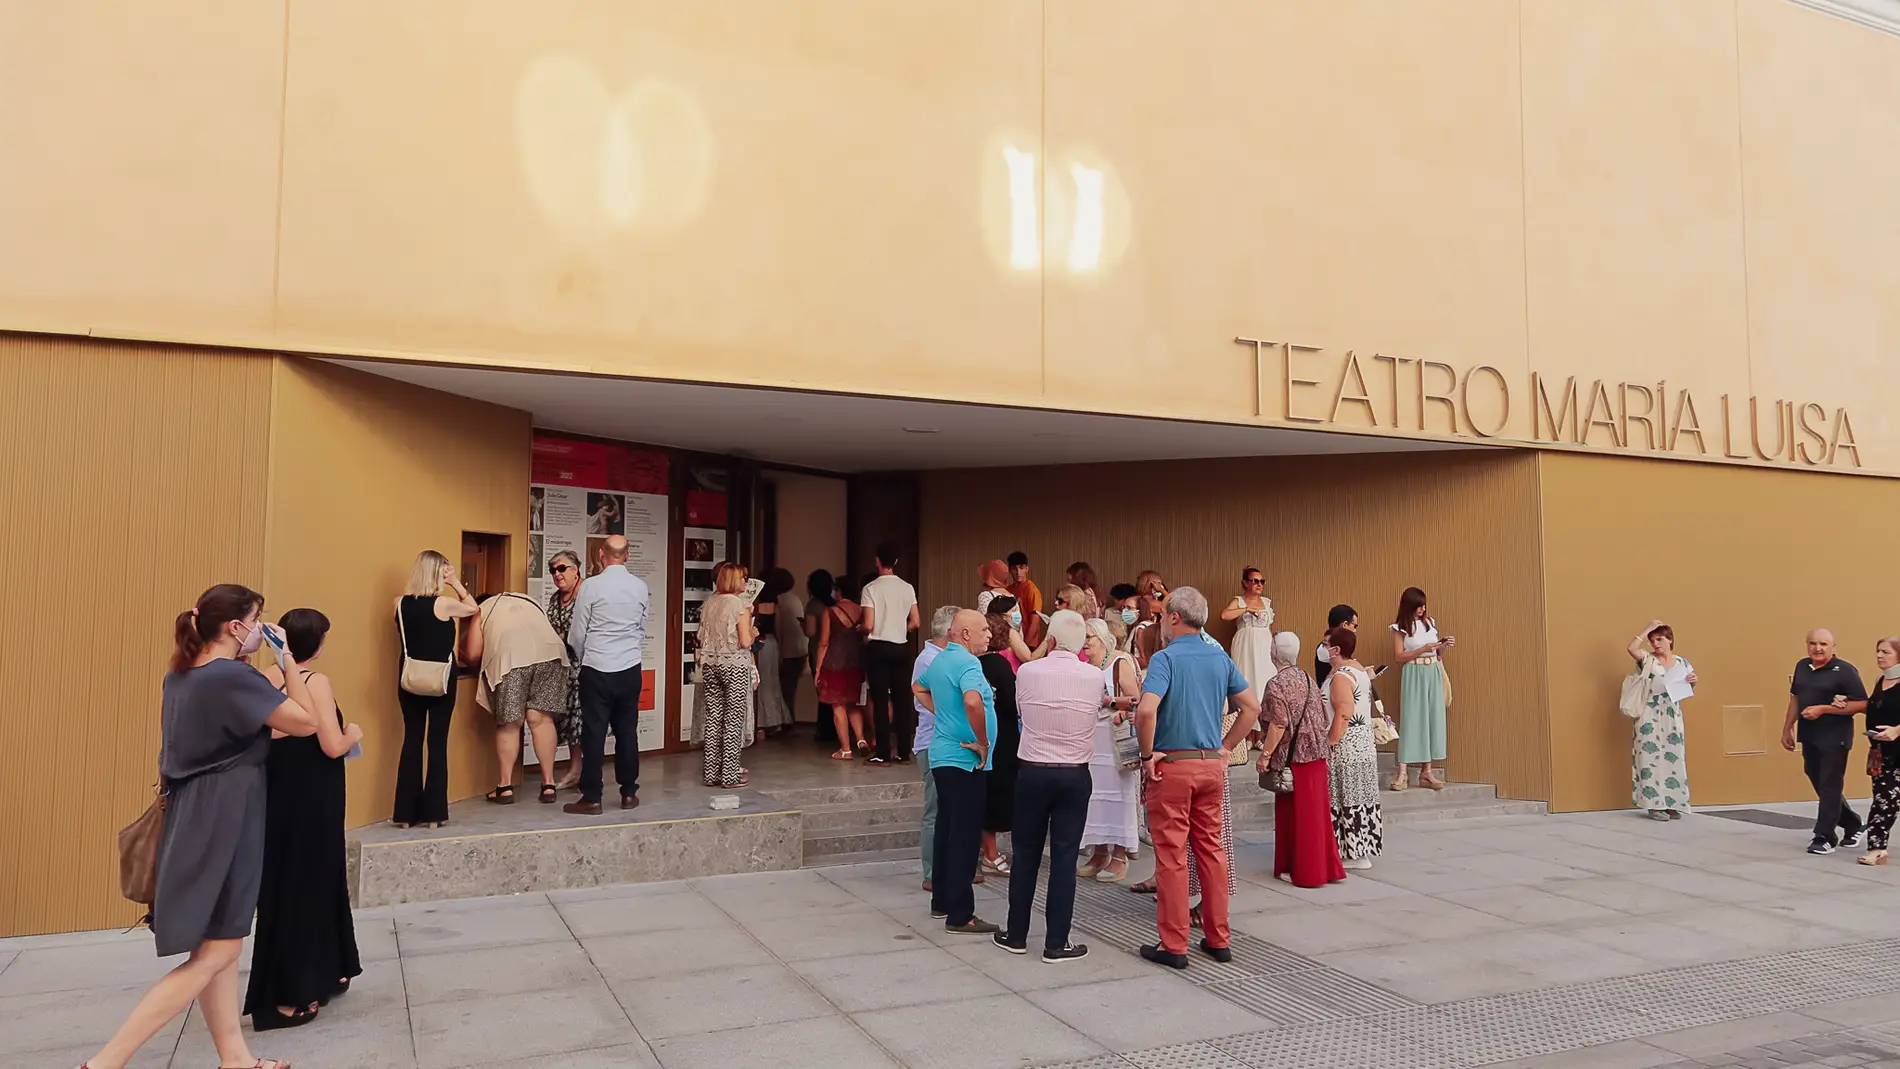 El Teatro María Luisa acoge este sábado la representación de Medea, dentro de la programación del Festival de Teatro